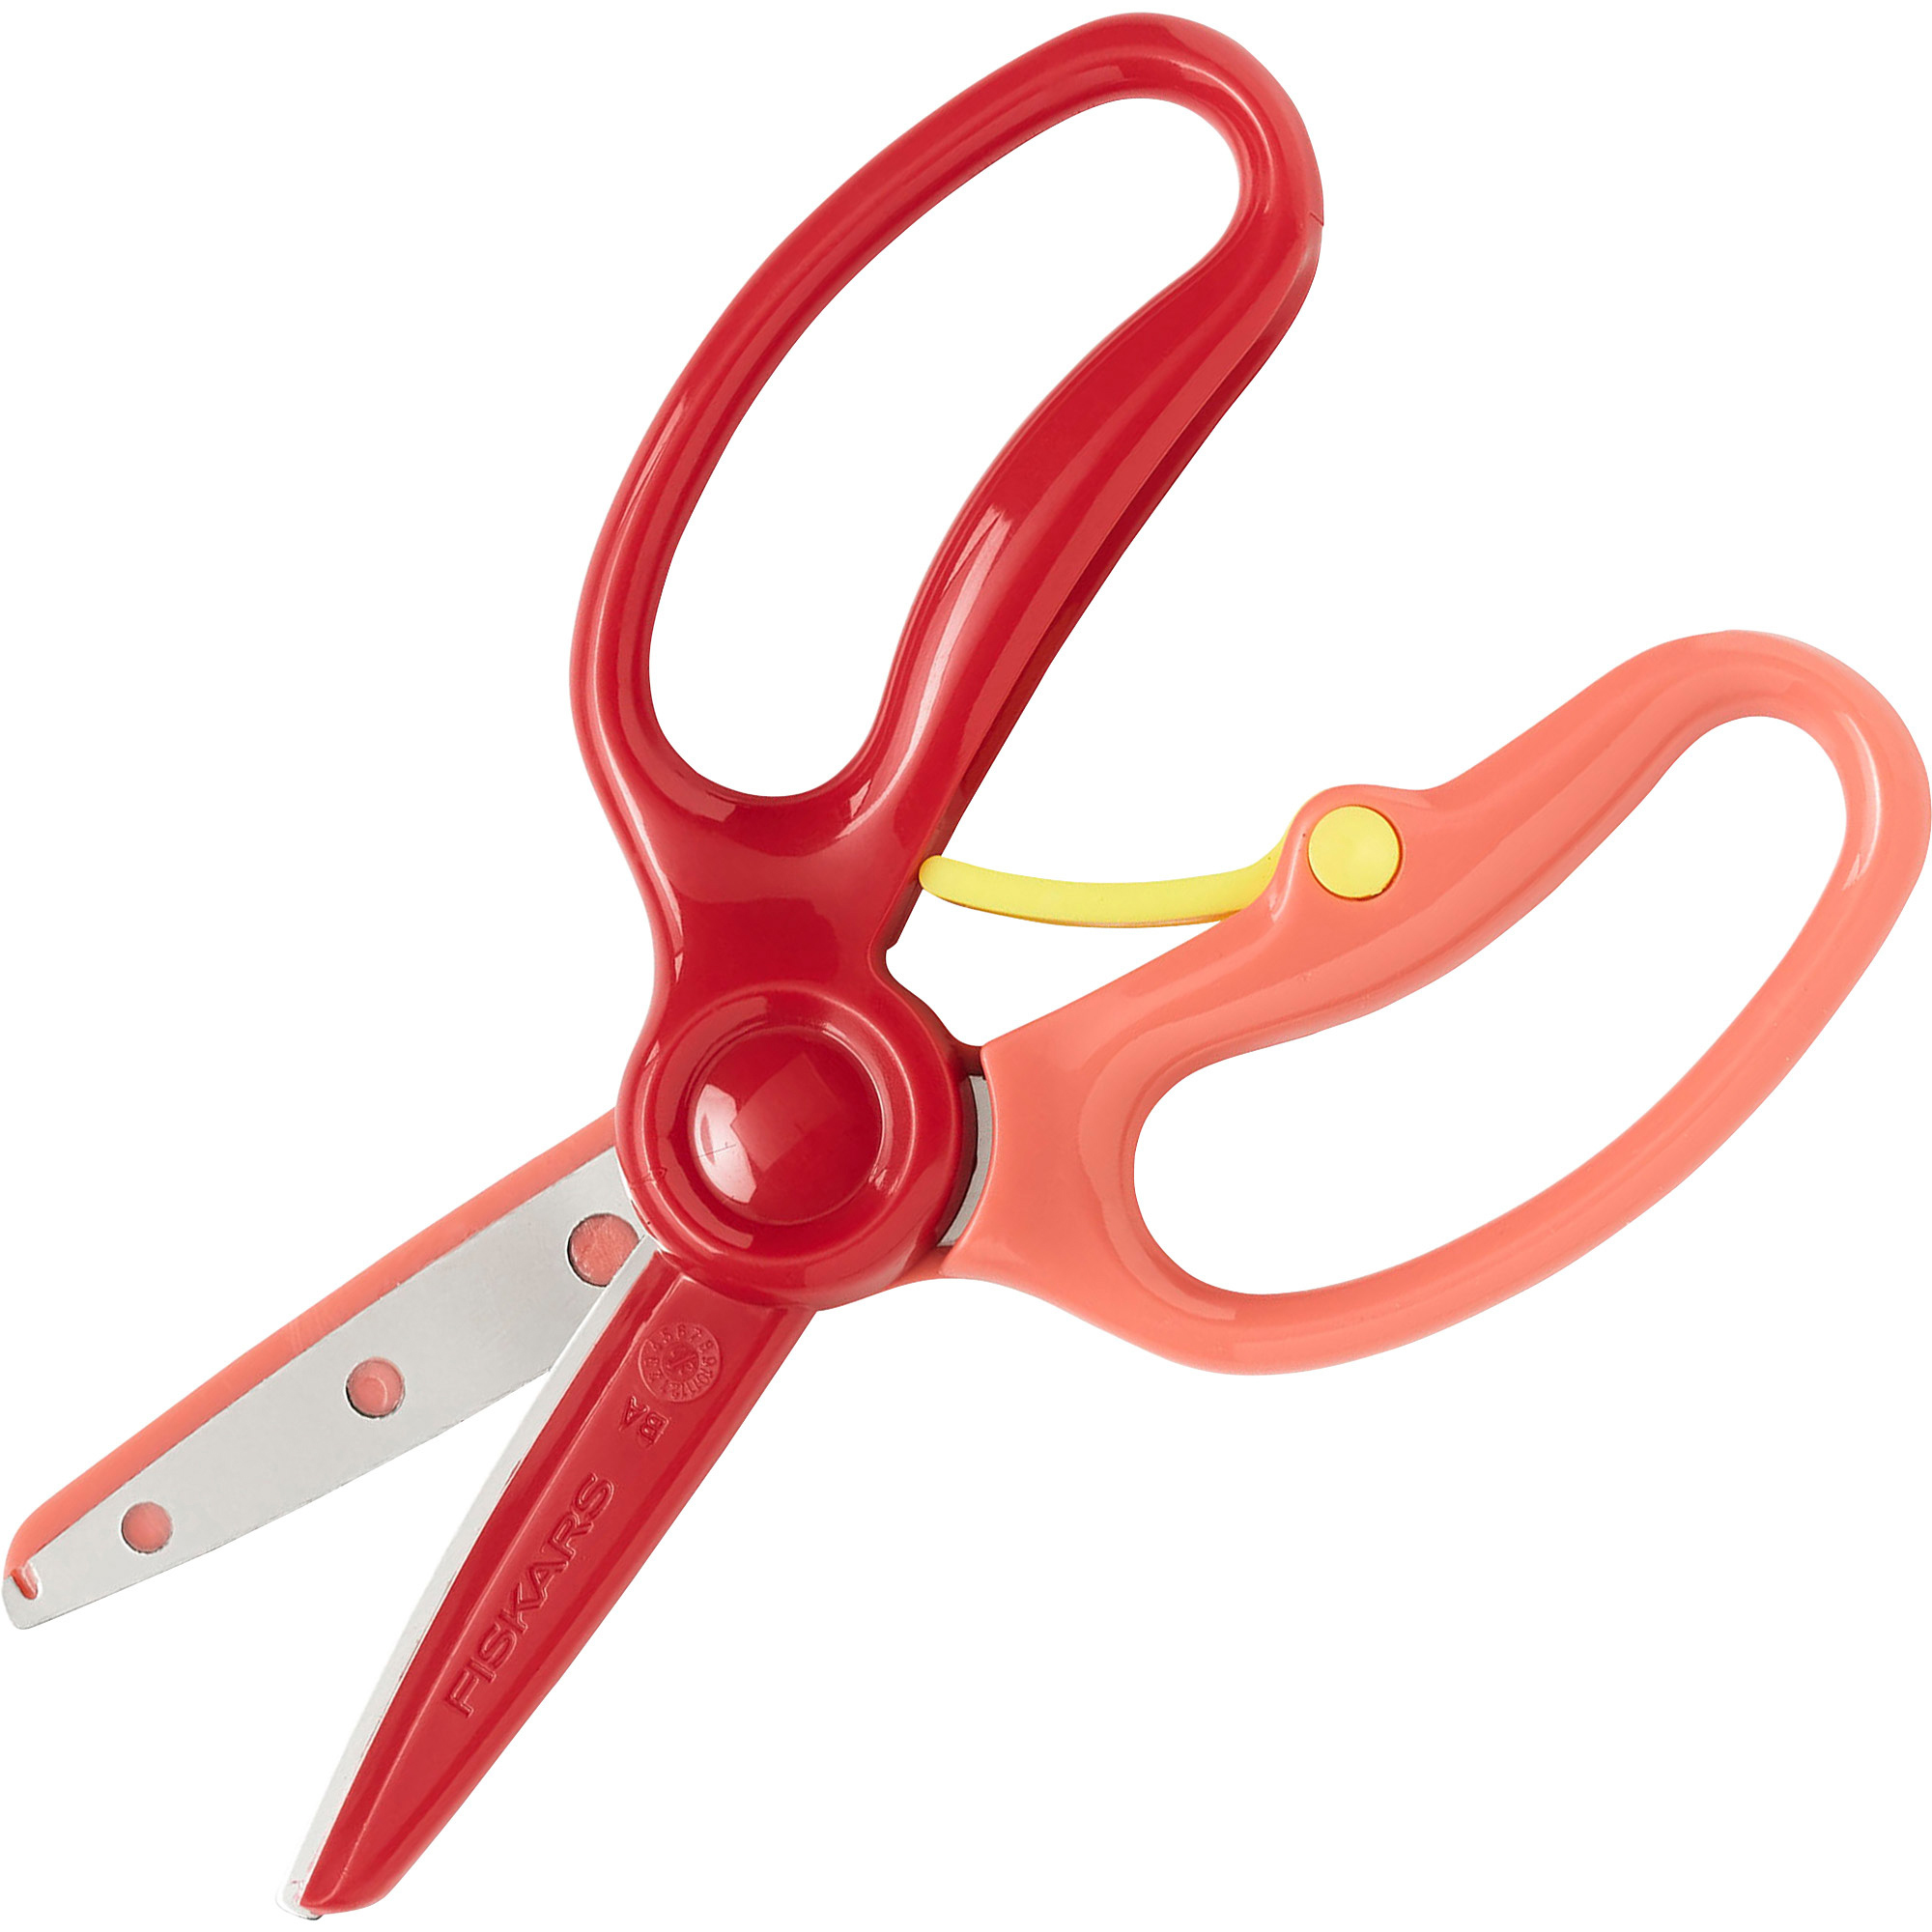 FSK1949001025 - Fiskars Preschool Training Scissors - Left/Right